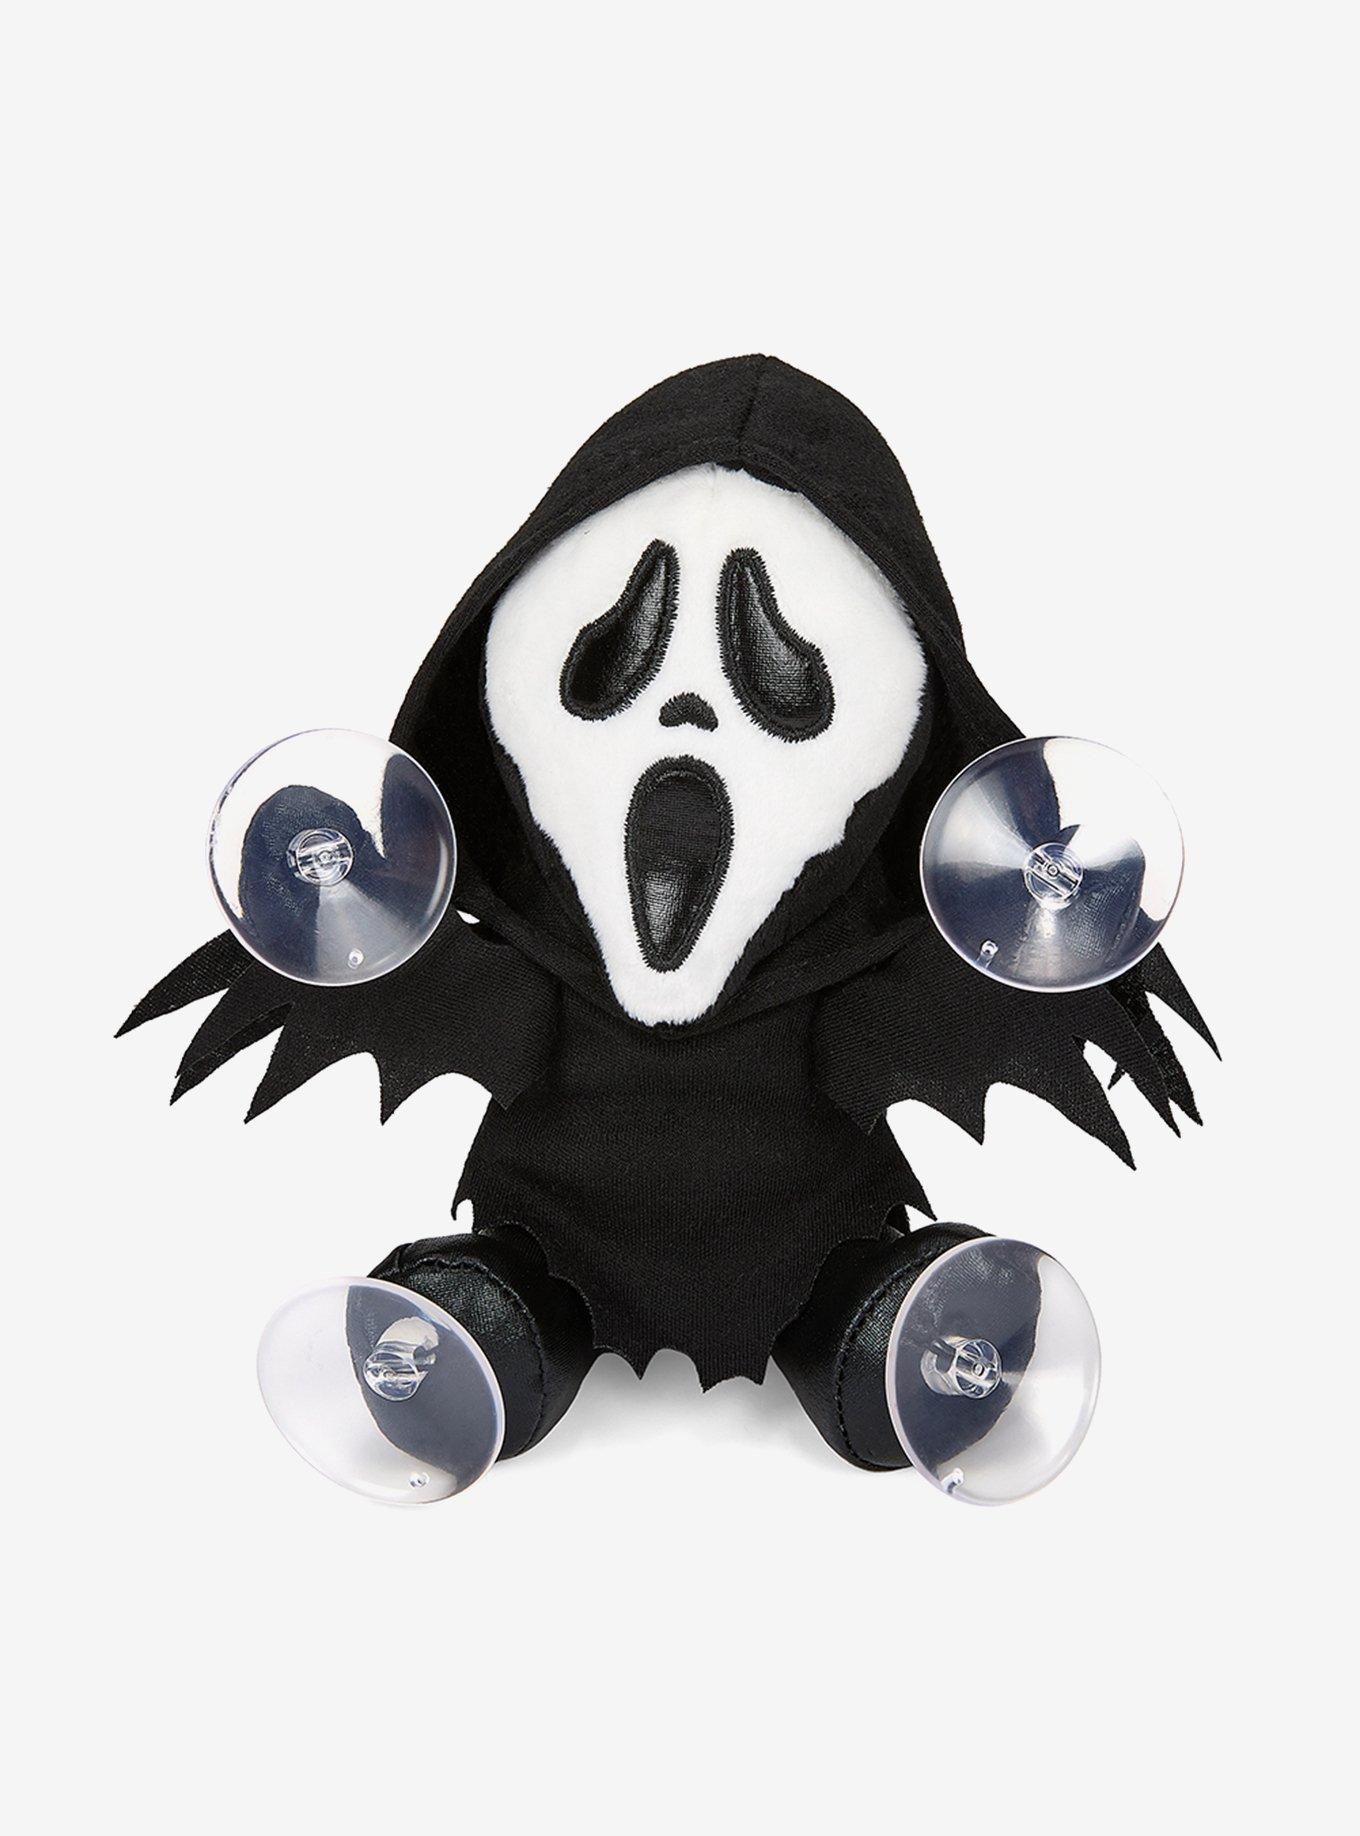 Scream Ghostface Inspired Plushie Doll Large, Horror Plush, Horror Gift 